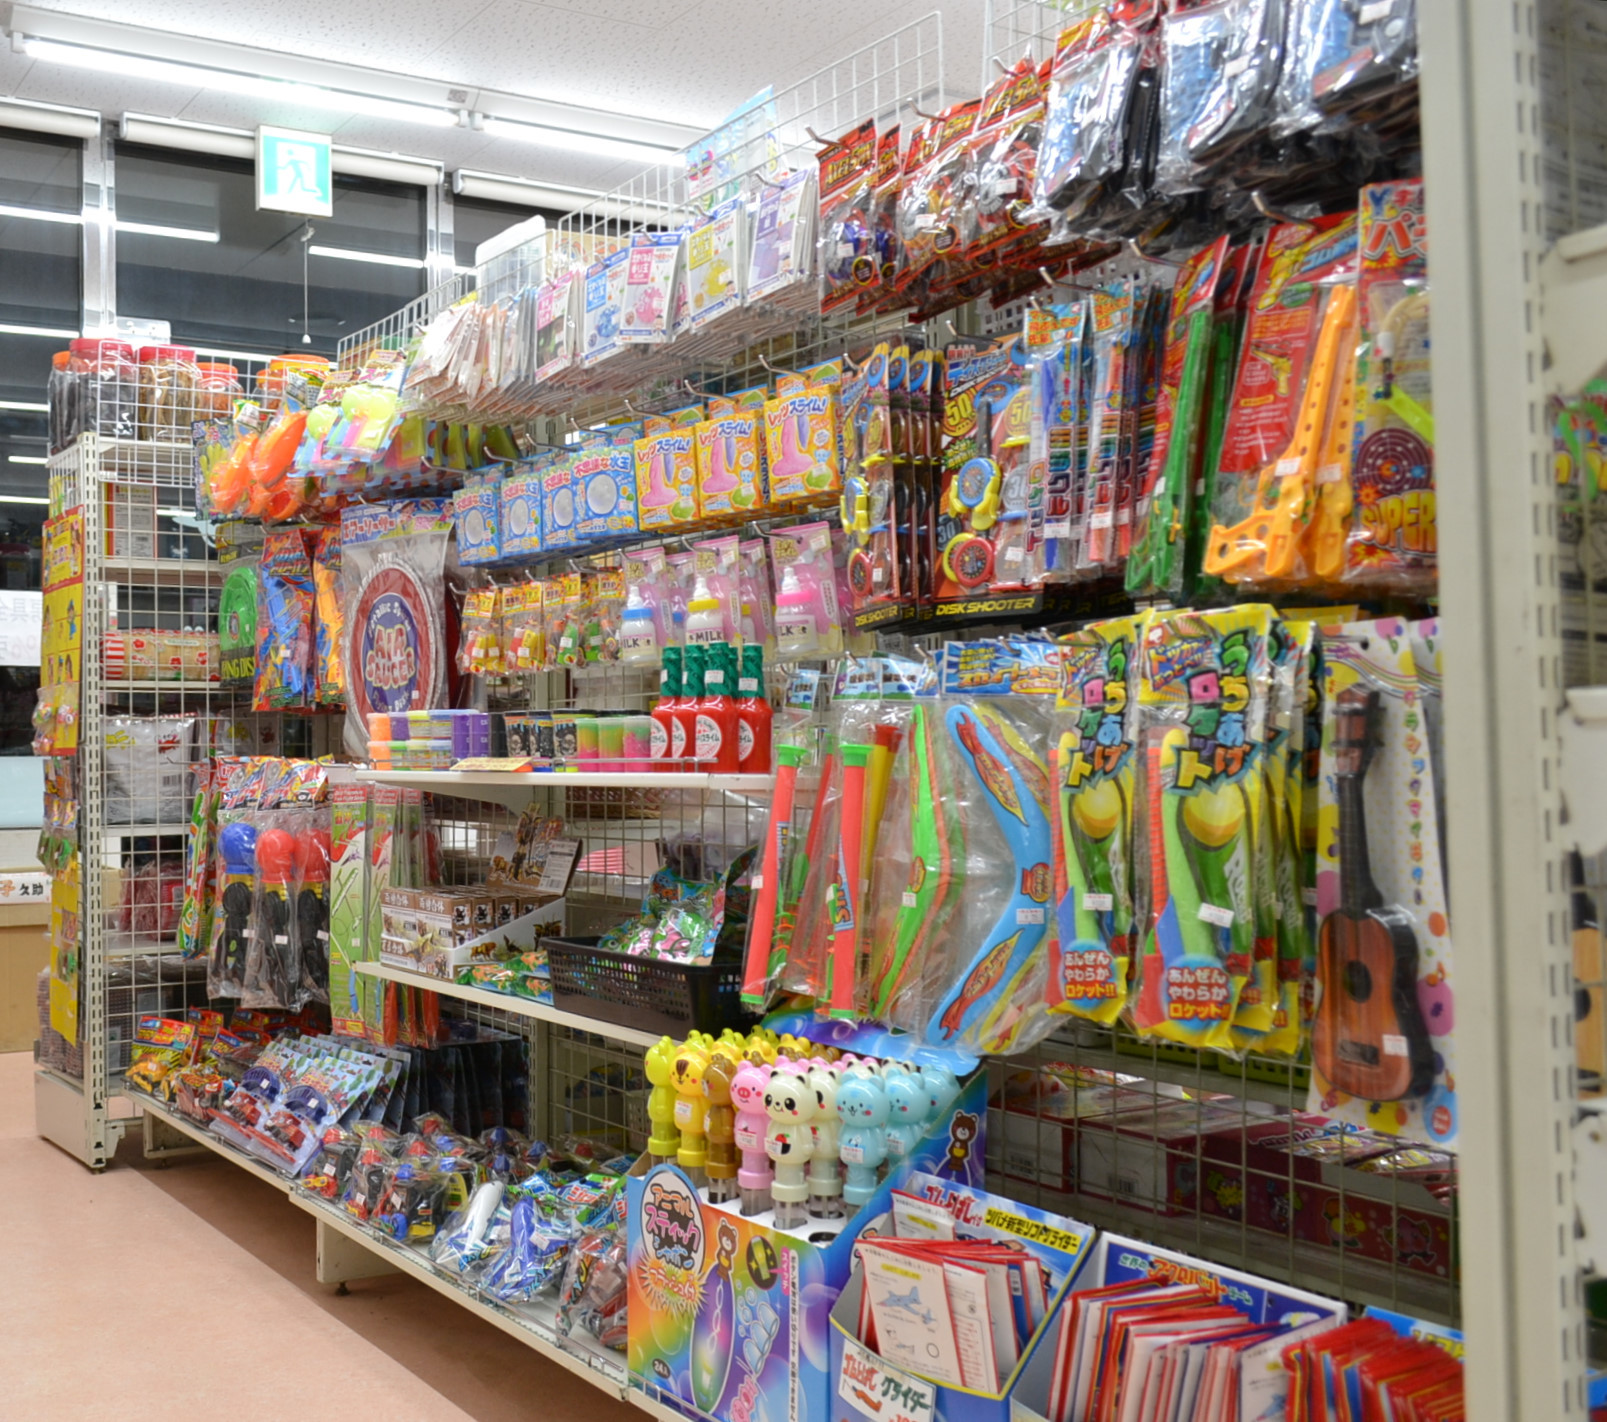  東京都江戸川区にある駄菓子屋 しろがねとんぼのブログ